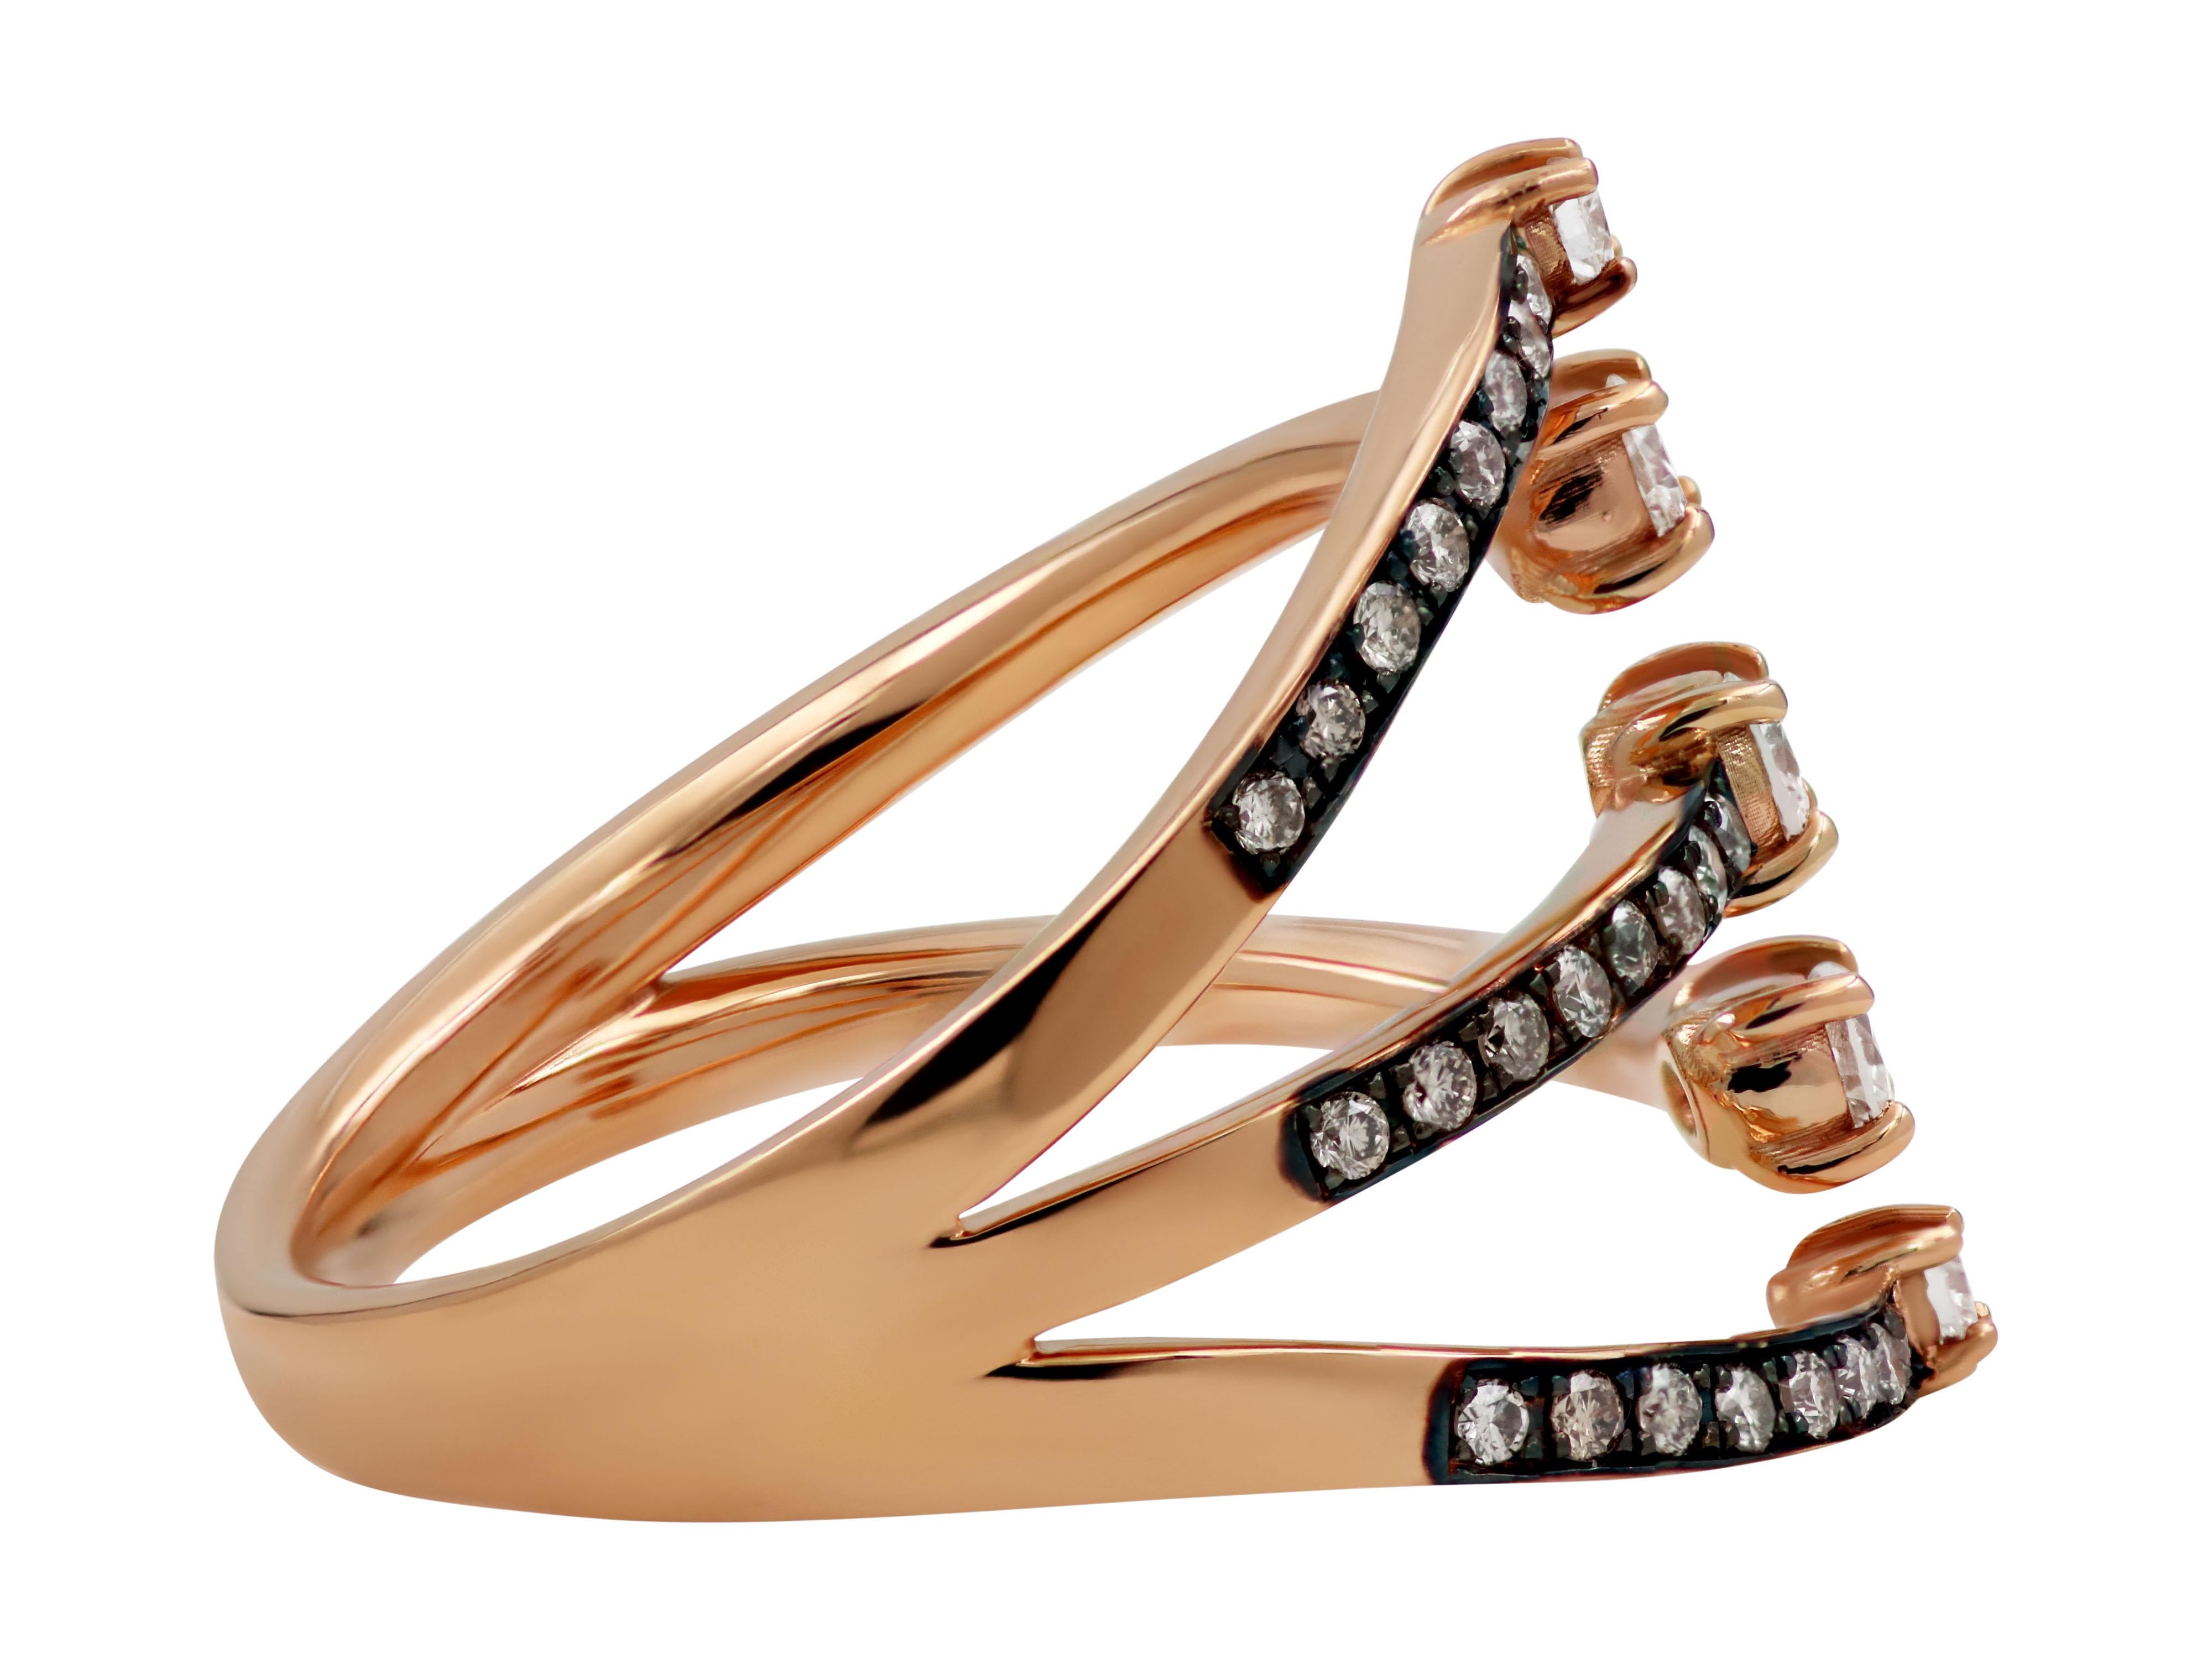 Moderner Ring aus 18 Karat Roségold mit fünf Diamanten mit Brillantschliff von insgesamt 0,54 Karat.

Breite: 0,708